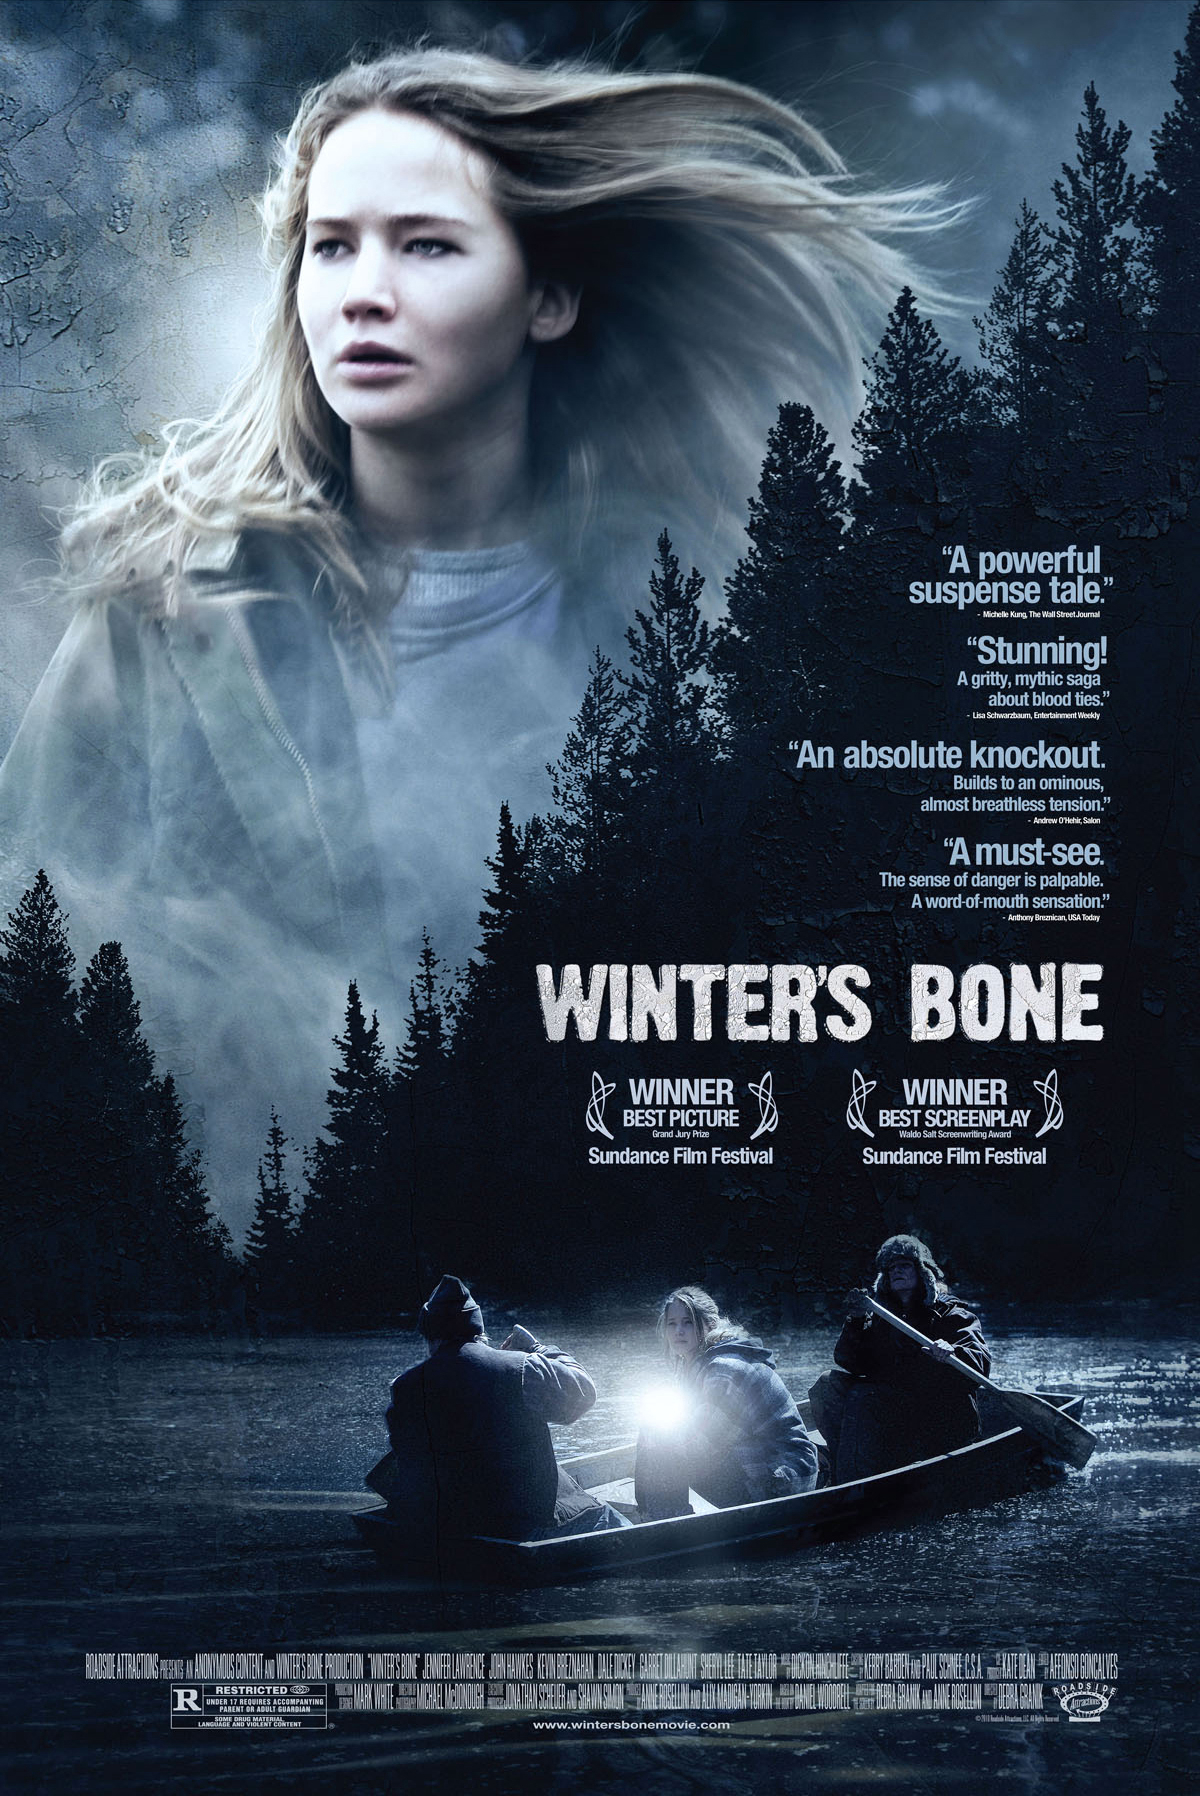 詹妮弗·劳伦斯《冬天的骨头》海报图片